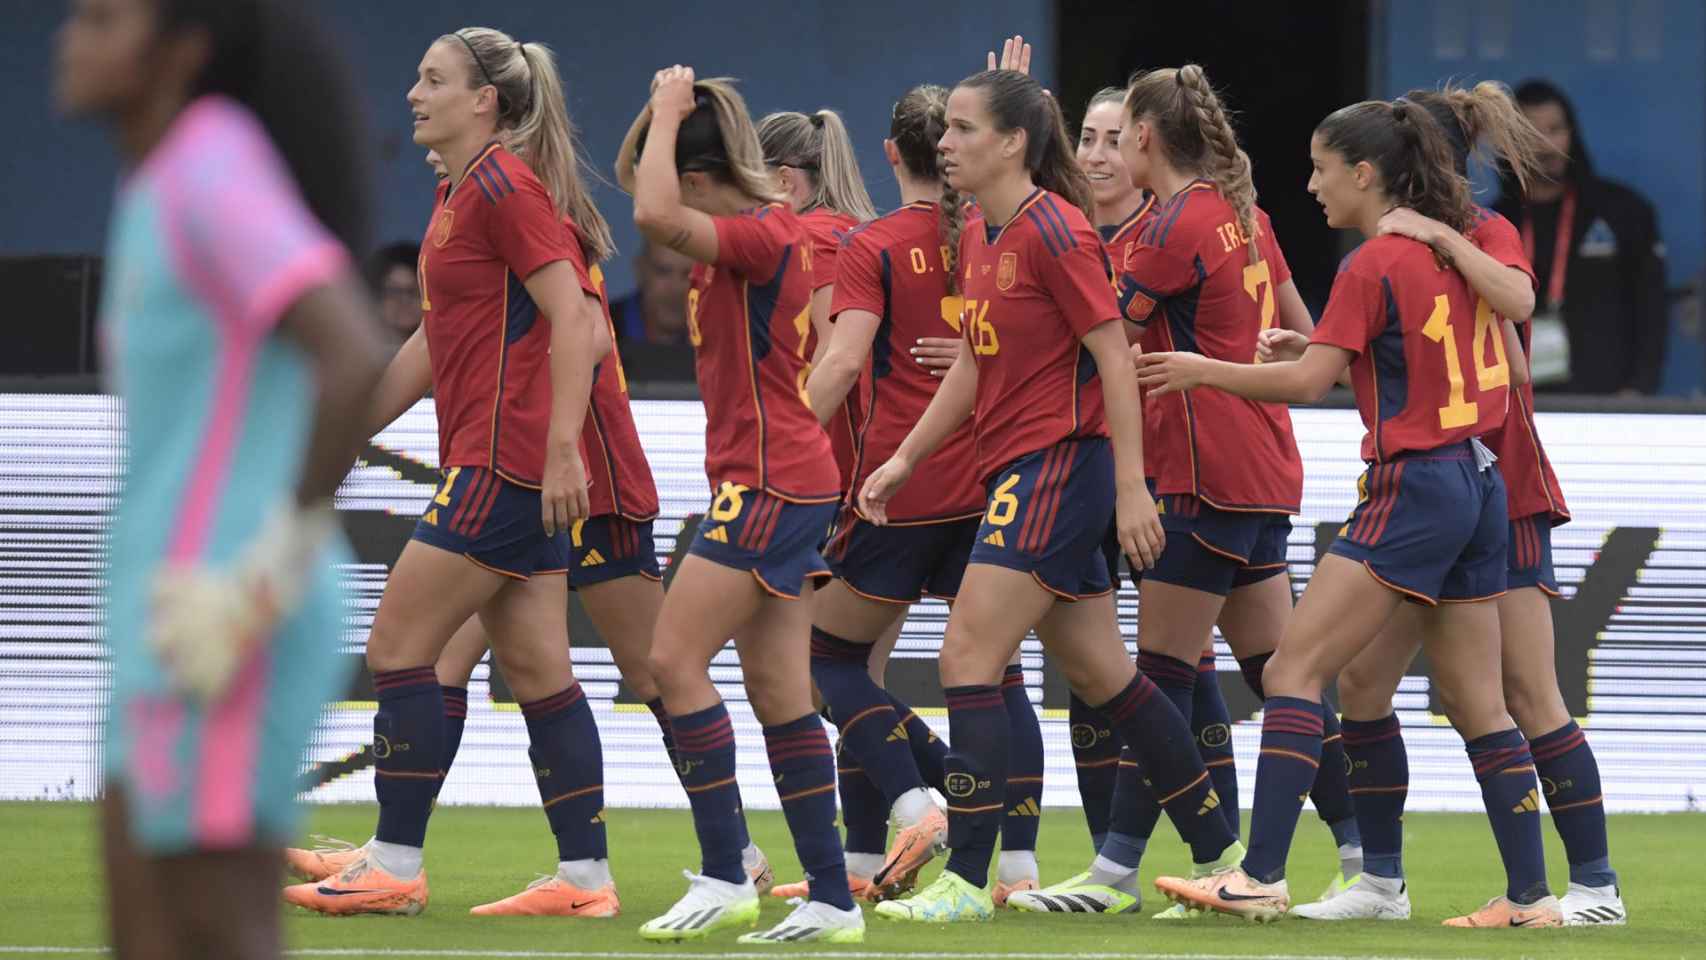 Las jugadoras de la Selección española de fútbol femenino, celebrando un gol ante Panamá, en una imagen de archivo.